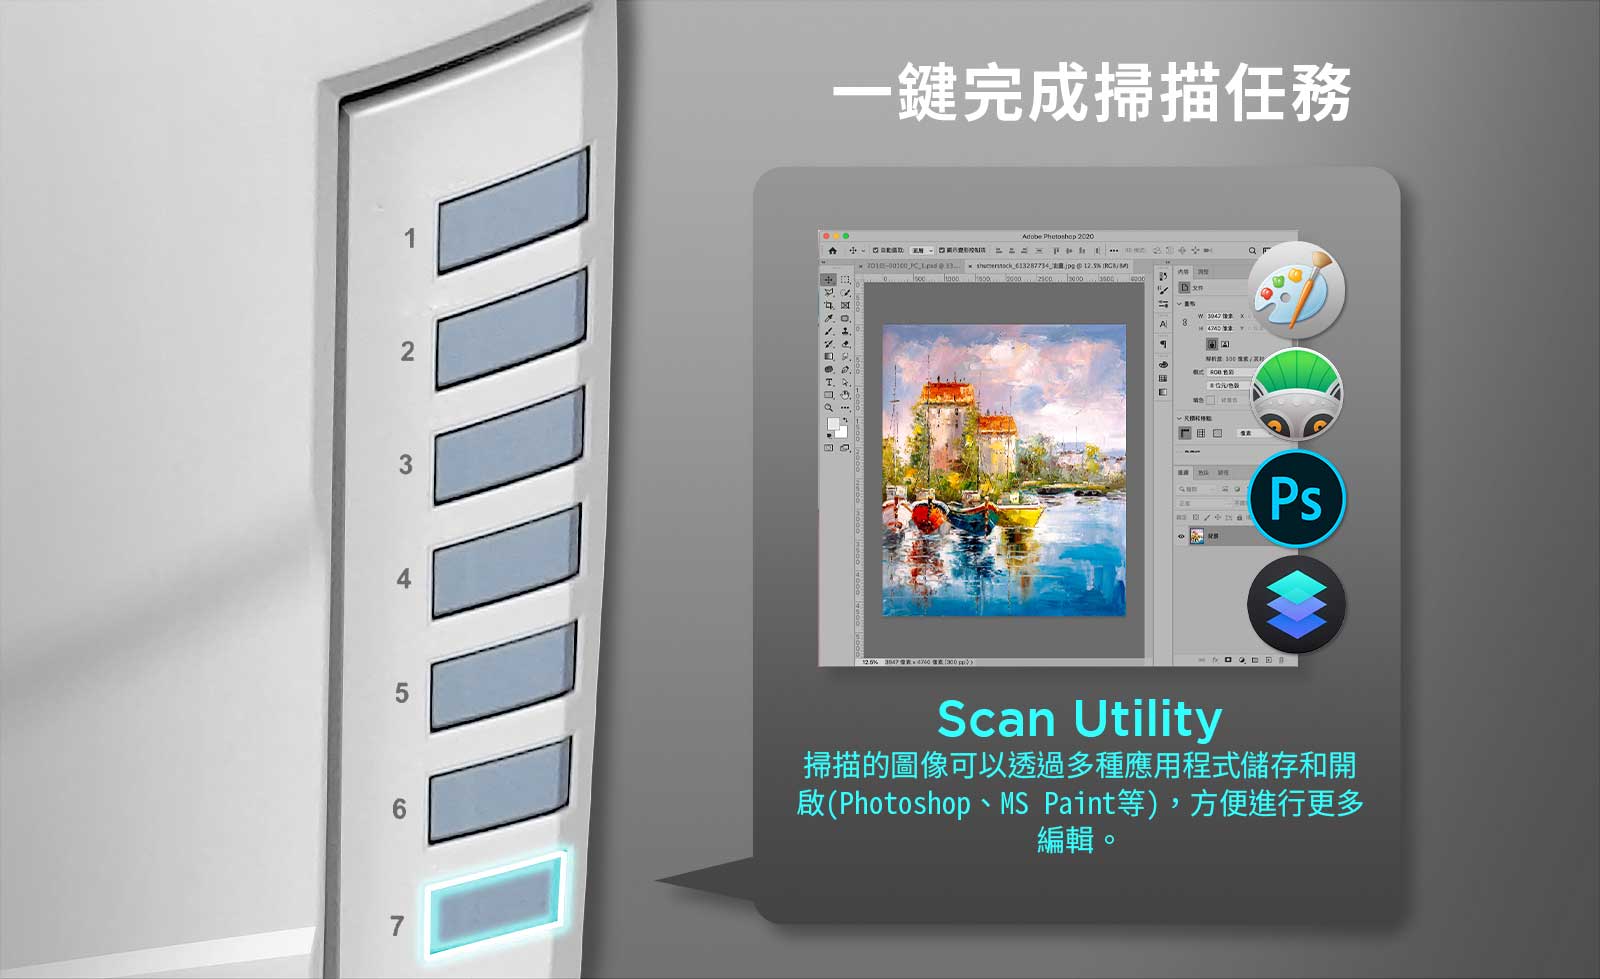 掃描按鈕：掃描圖像並將其傳送到所選的編輯軟體，例如 Print 或 Photoshop。 